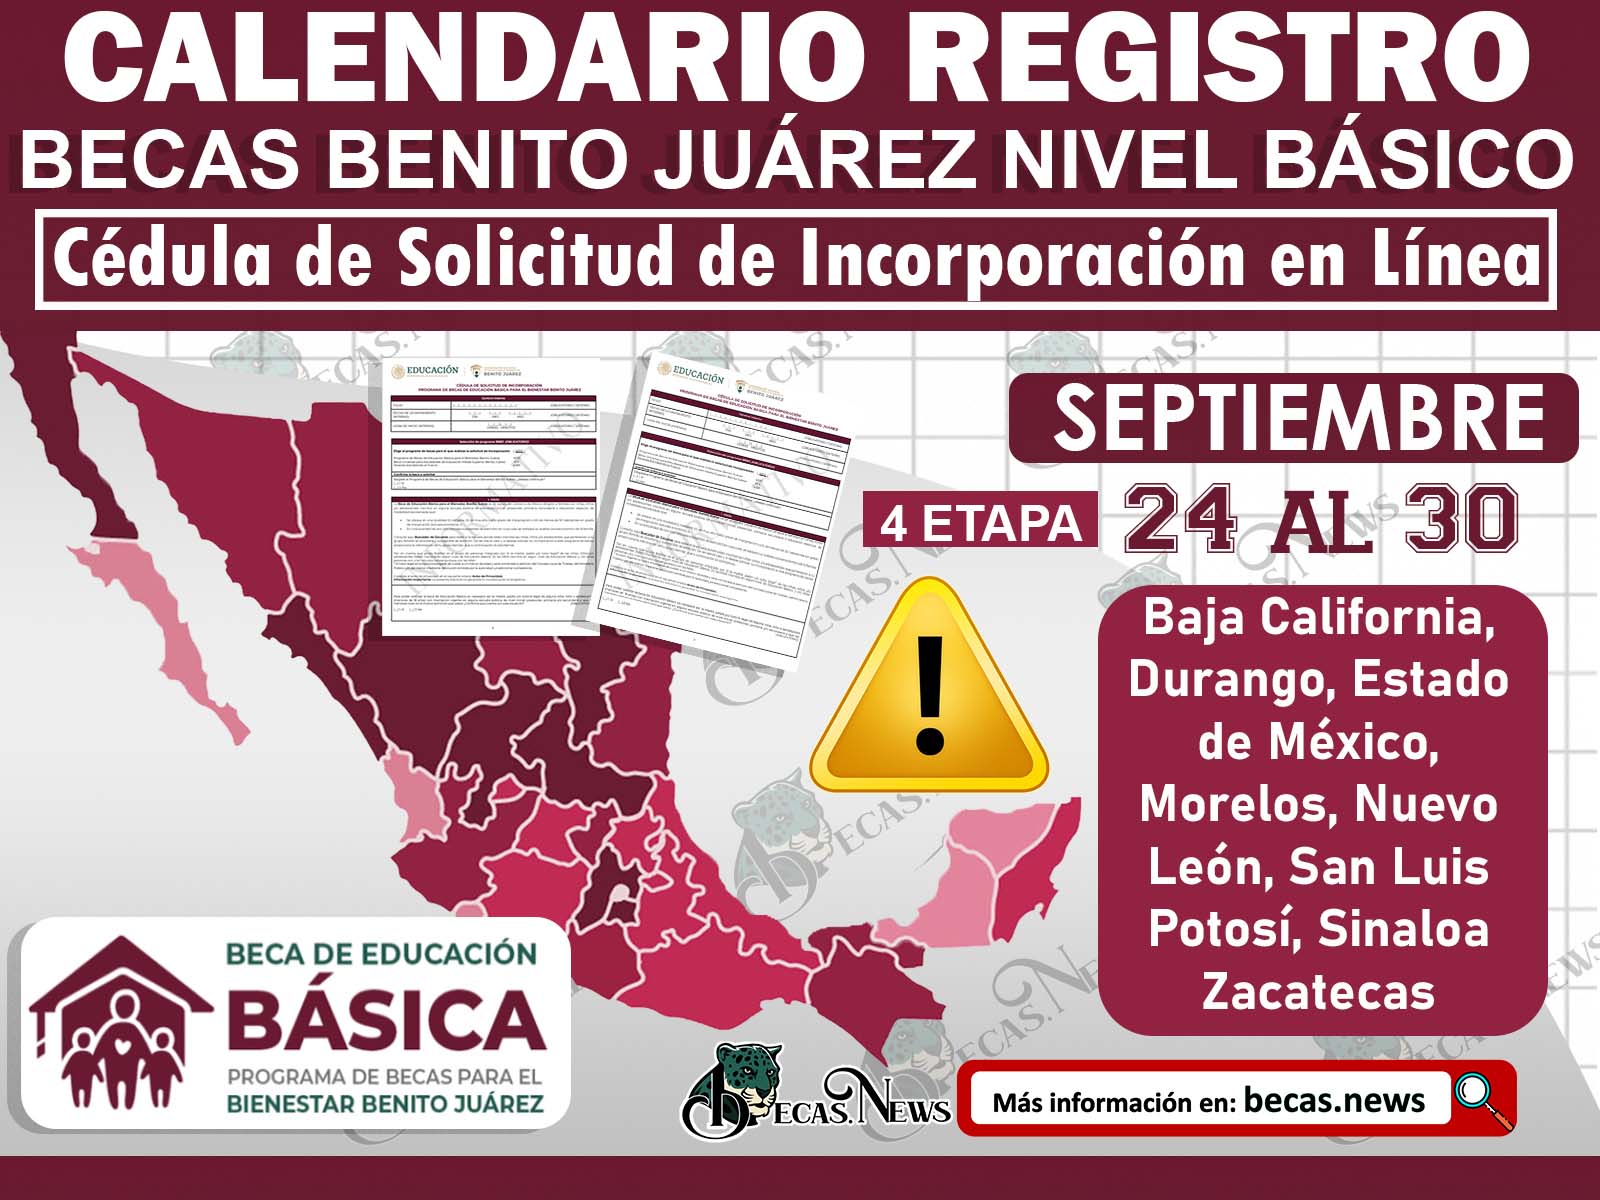 ¡Muy buenas noticias! Del 24 al 30 de Septiembre estos son los estado que podrán ingresar a la plataforma de registro Becas Benito Juárez